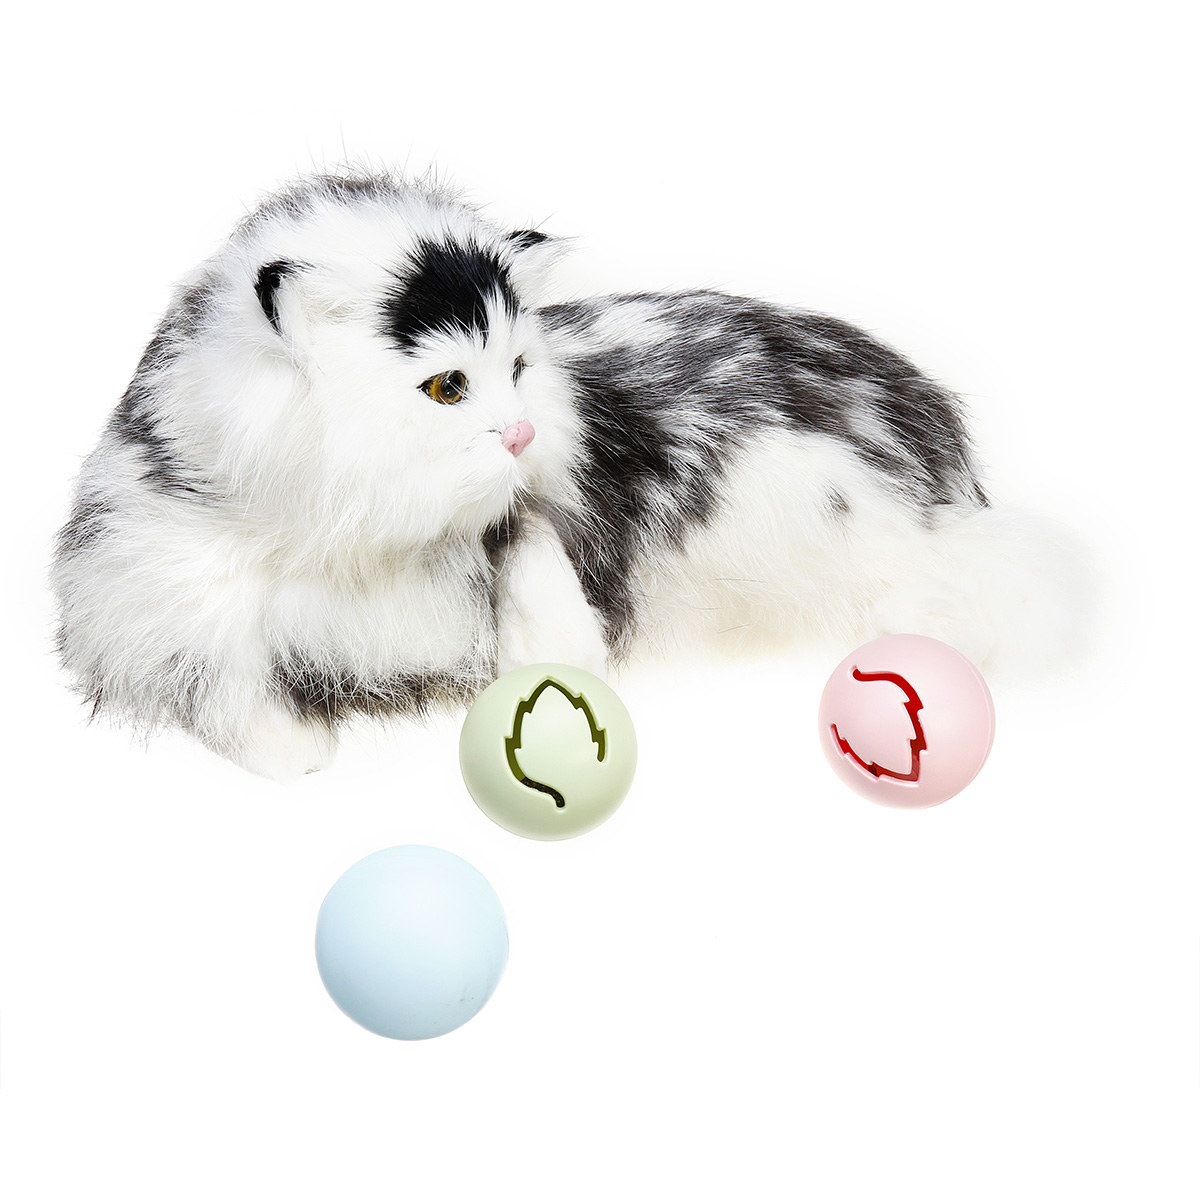 Katze Deko Garten Best Of Automatische Rot Blau Led Laser attraktive Ball Pet toys Rolllicht Interaktive Trainingsgerät Katze Hund